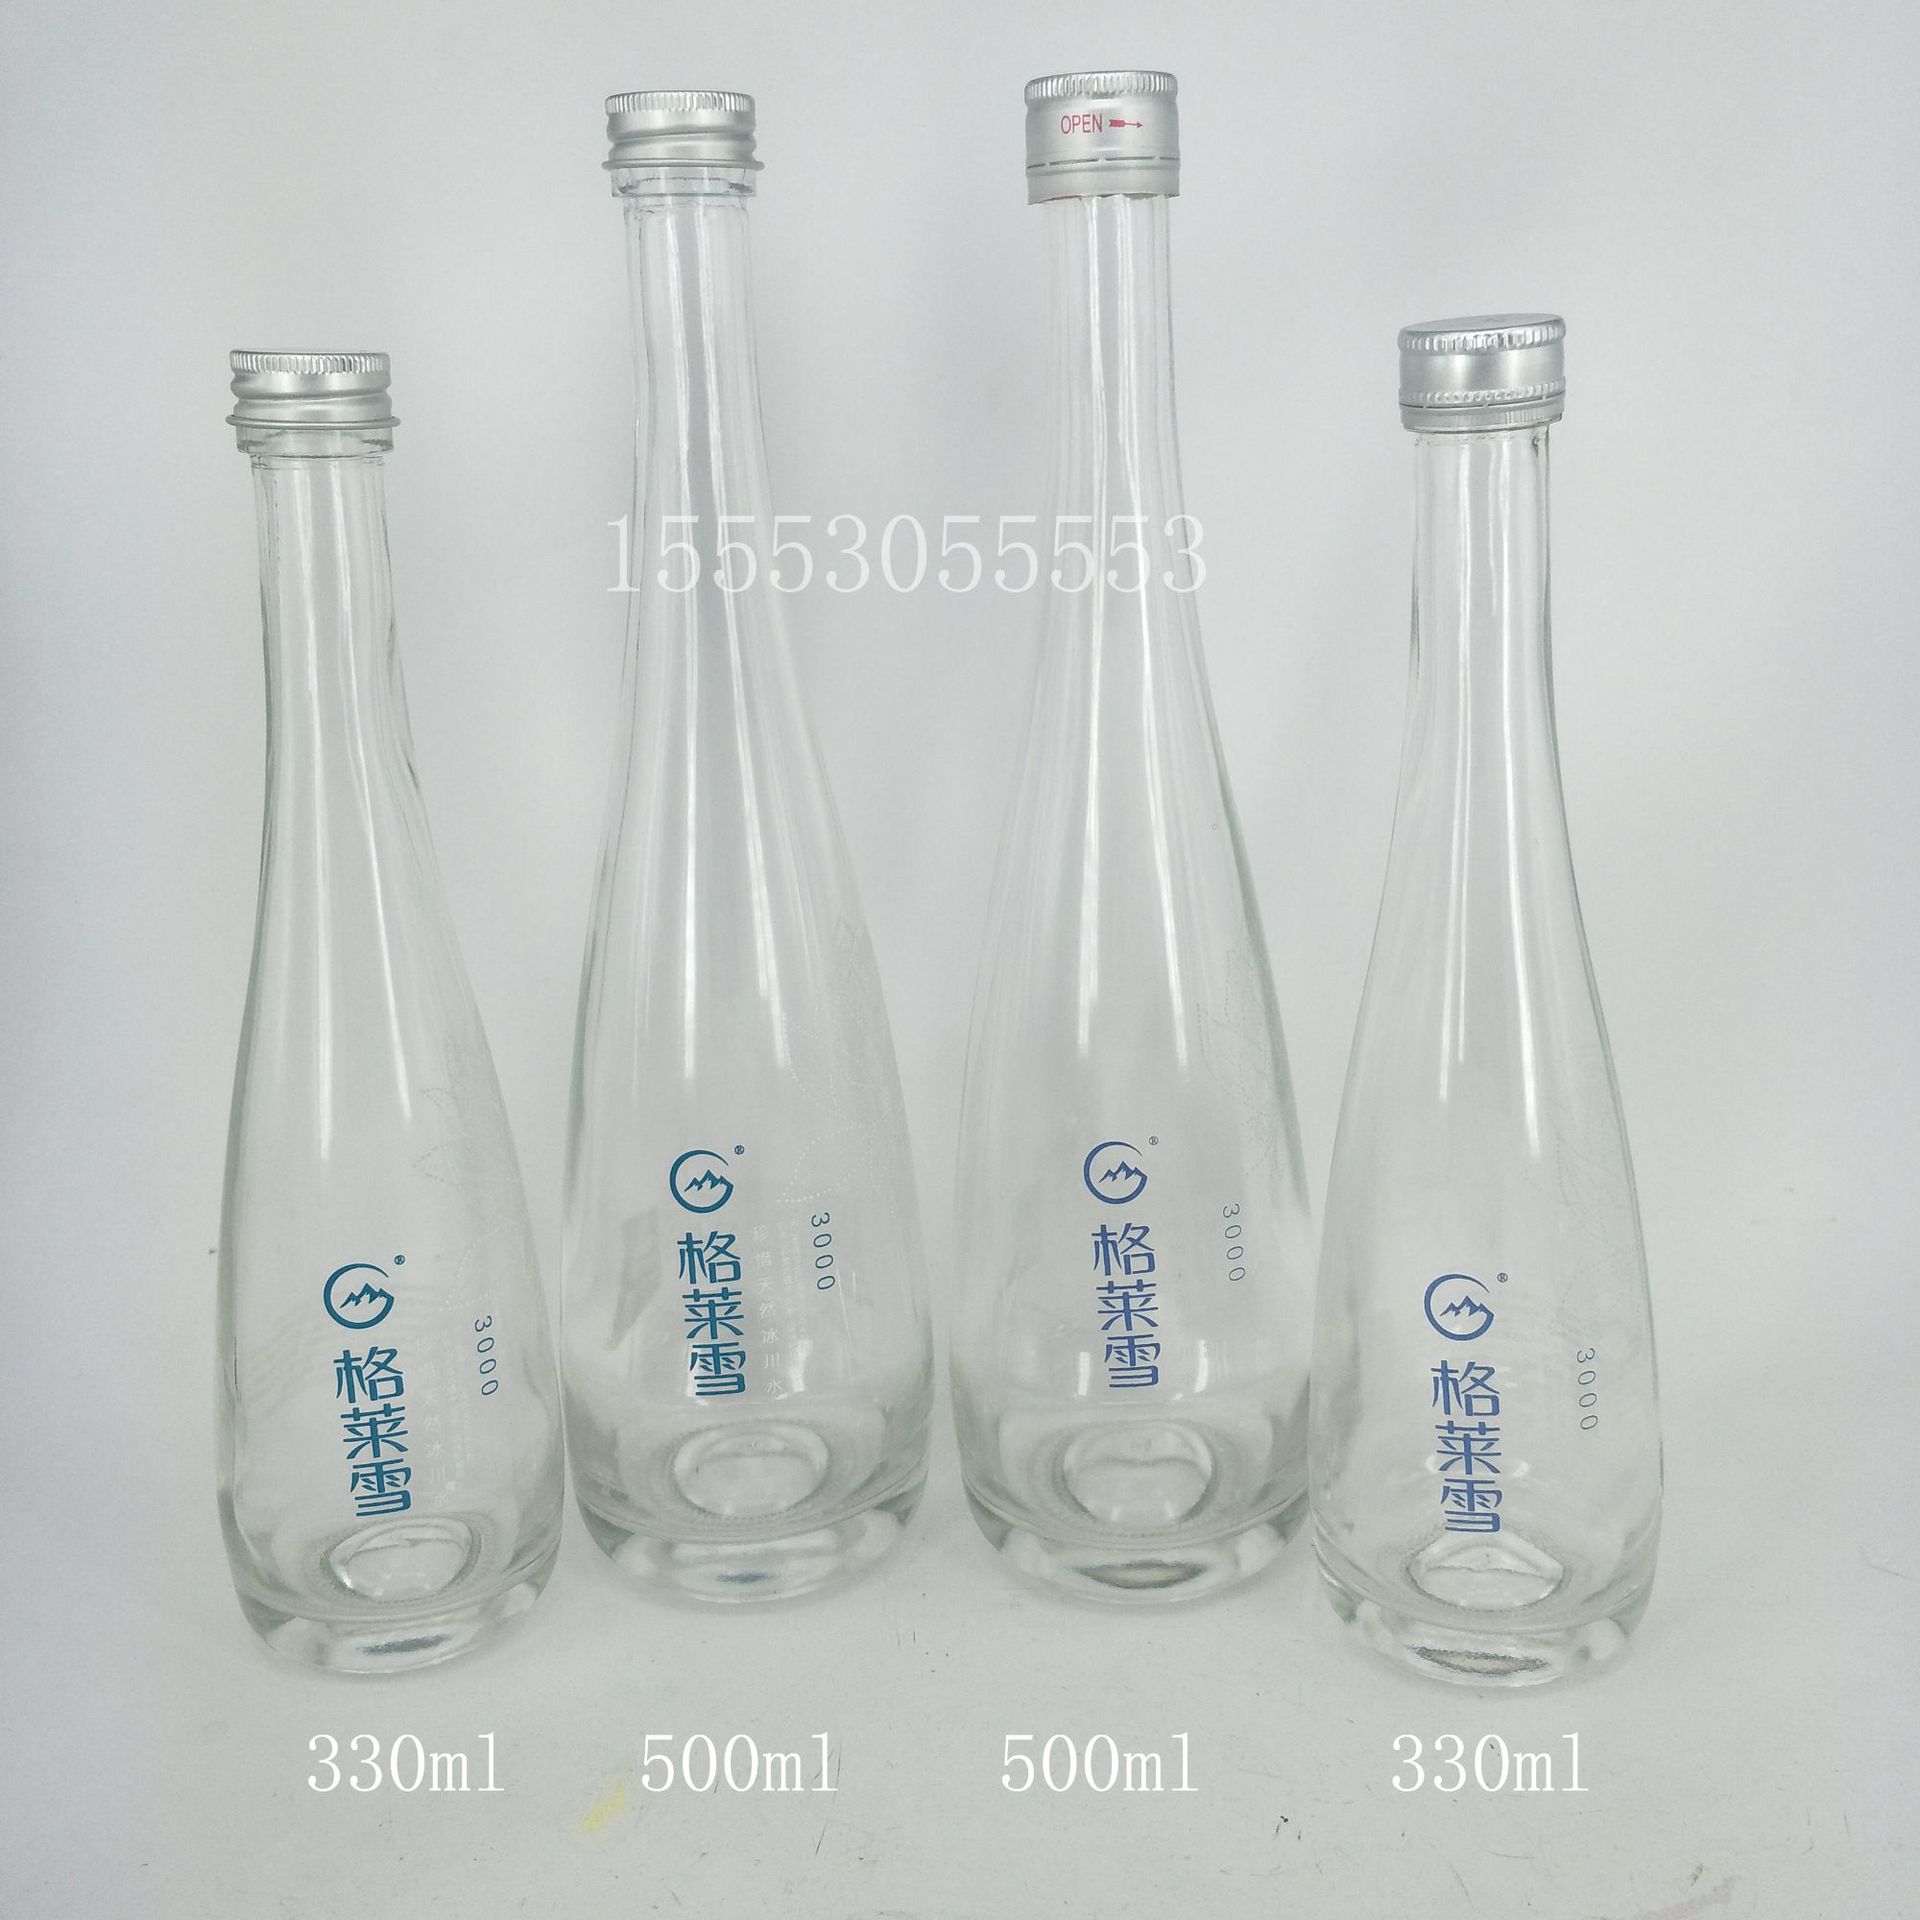 高档晶白料 275ml 依云矿泉水玻璃瓶   饮料  果汁玻璃瓶 250ml示例图9